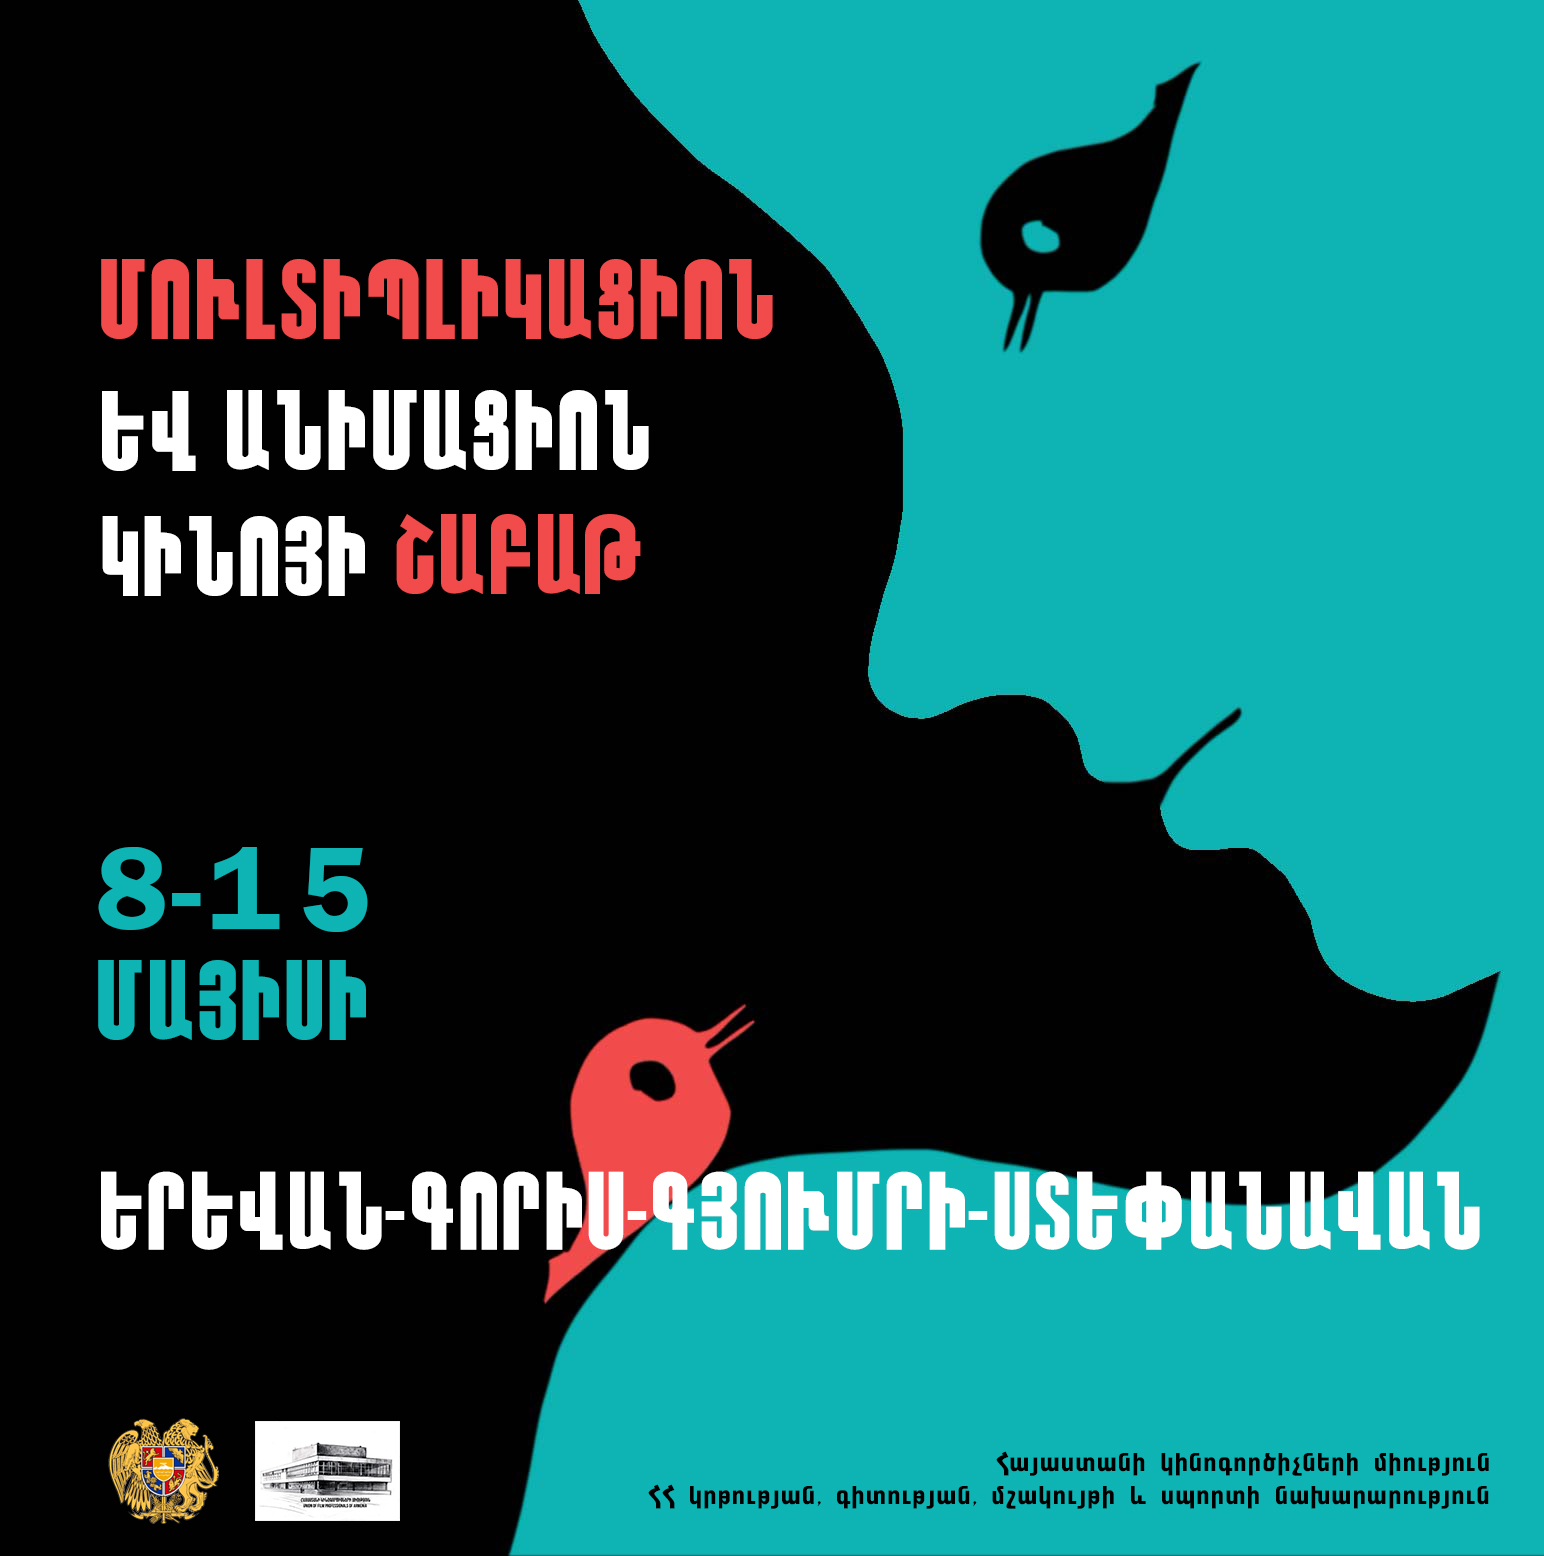 Երևանում և մարզերում կկայանա մուլտիպլիկացիոն և անիմացիոն կինոյի շաբաթ